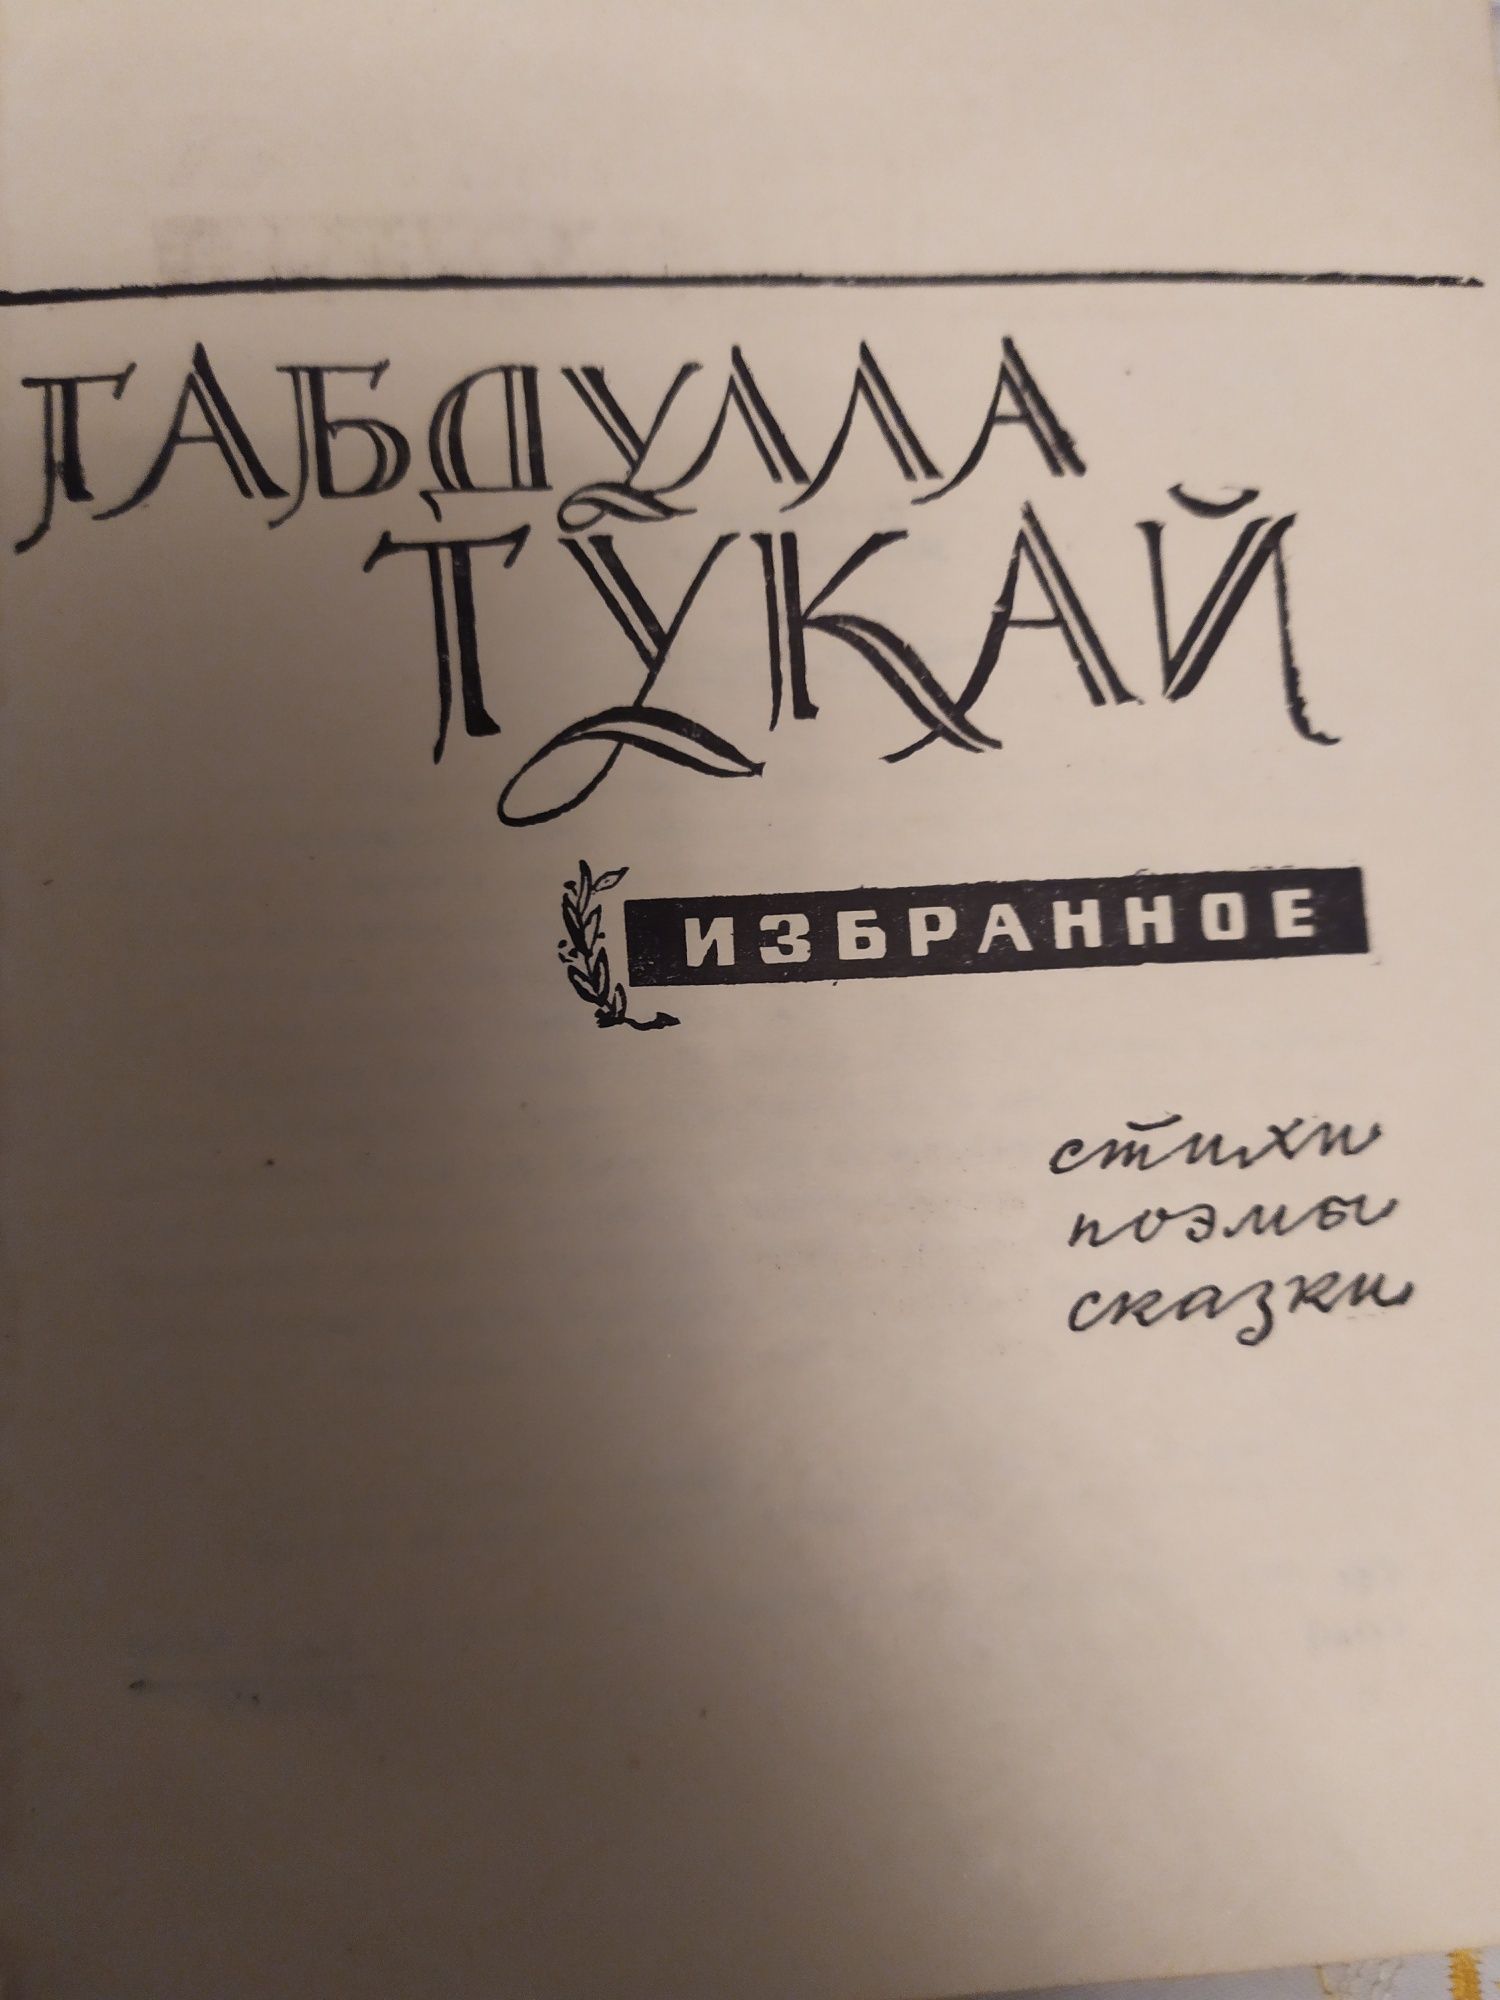 Габдулла Тукай "ИЗБРАННОЕ". Казань 1968г.